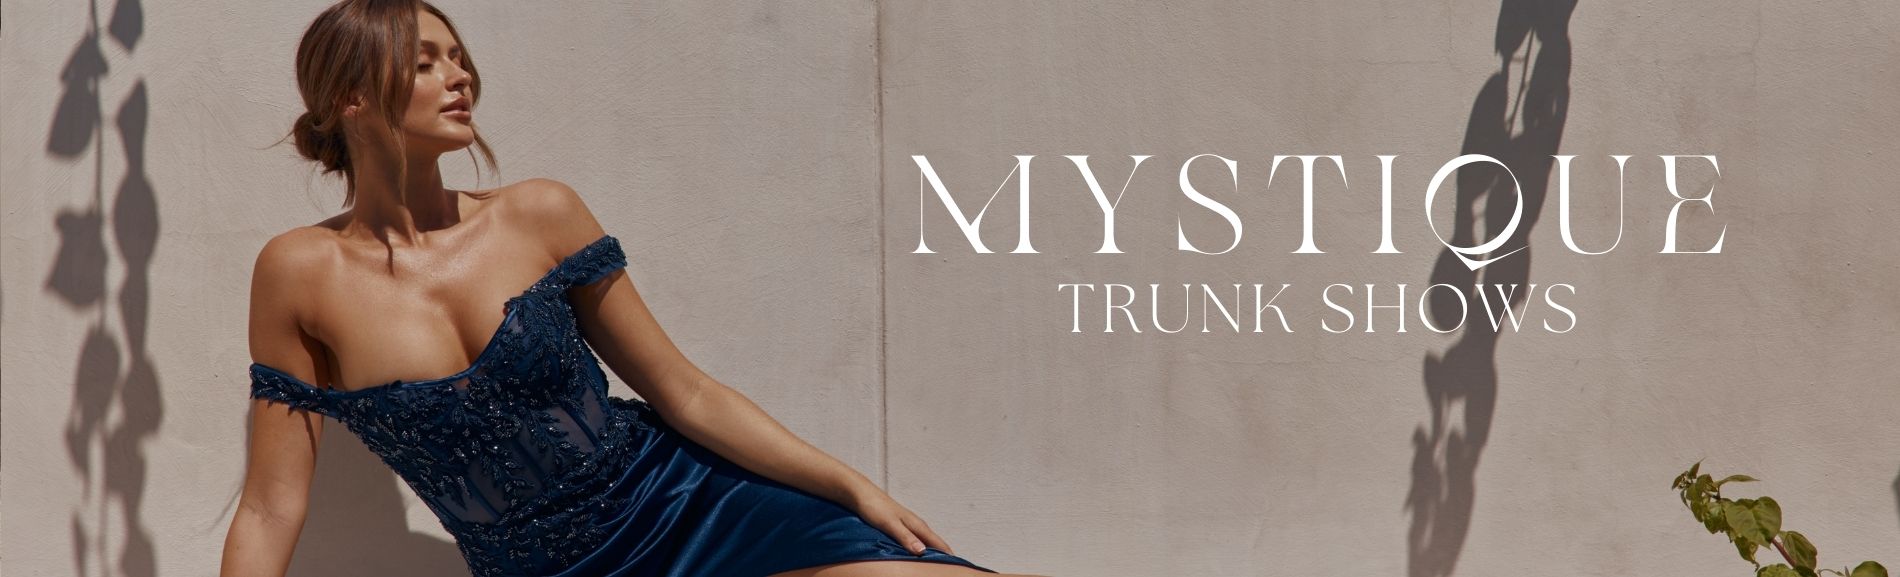 Mystique Trunk Show Banner